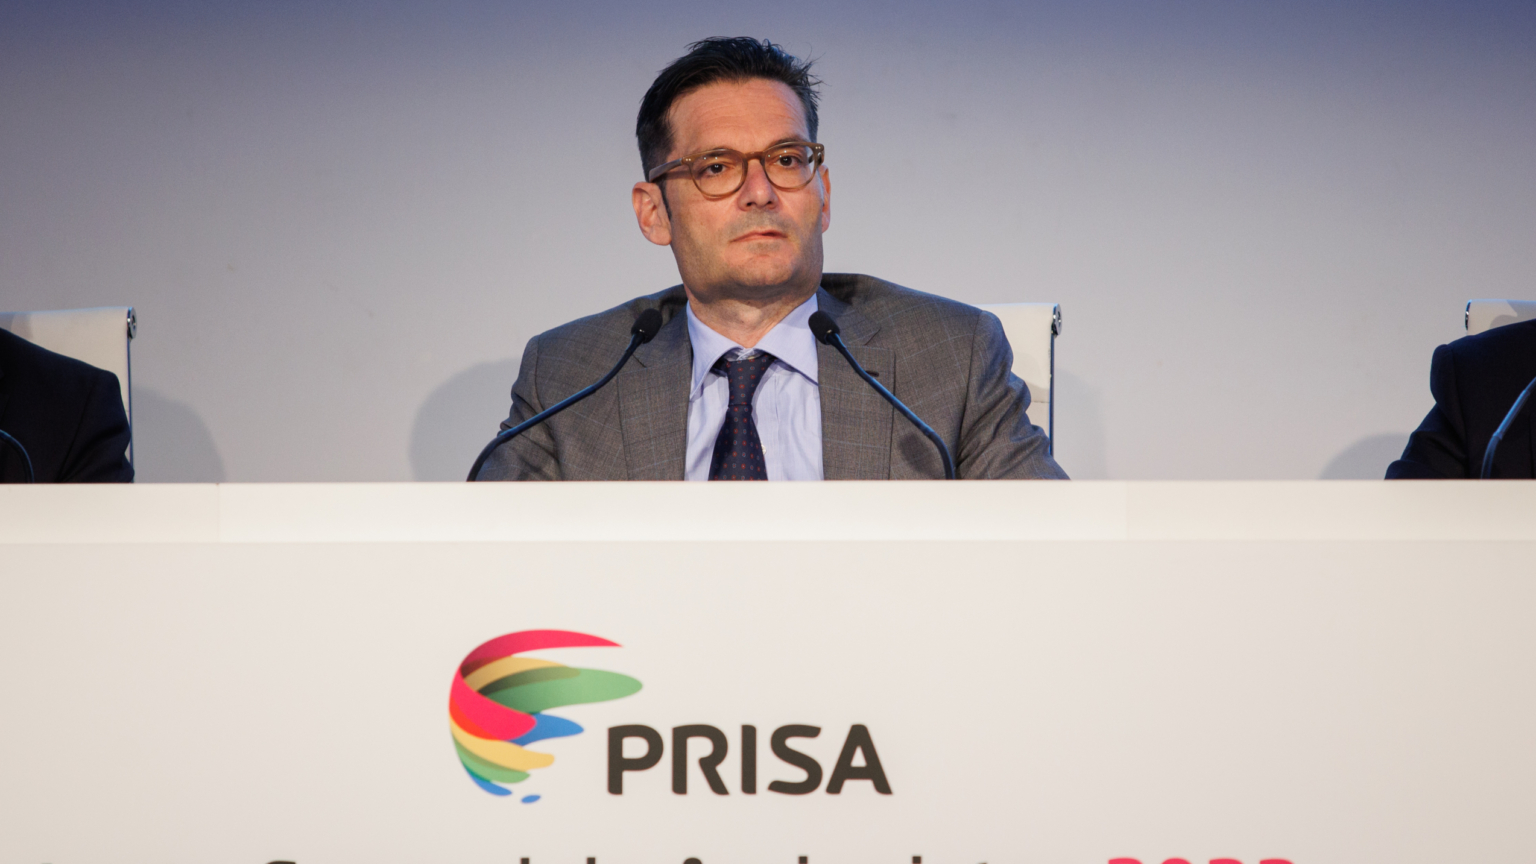 El Santander se rearma en Prisa y se postula como solución para la ampliación de capital